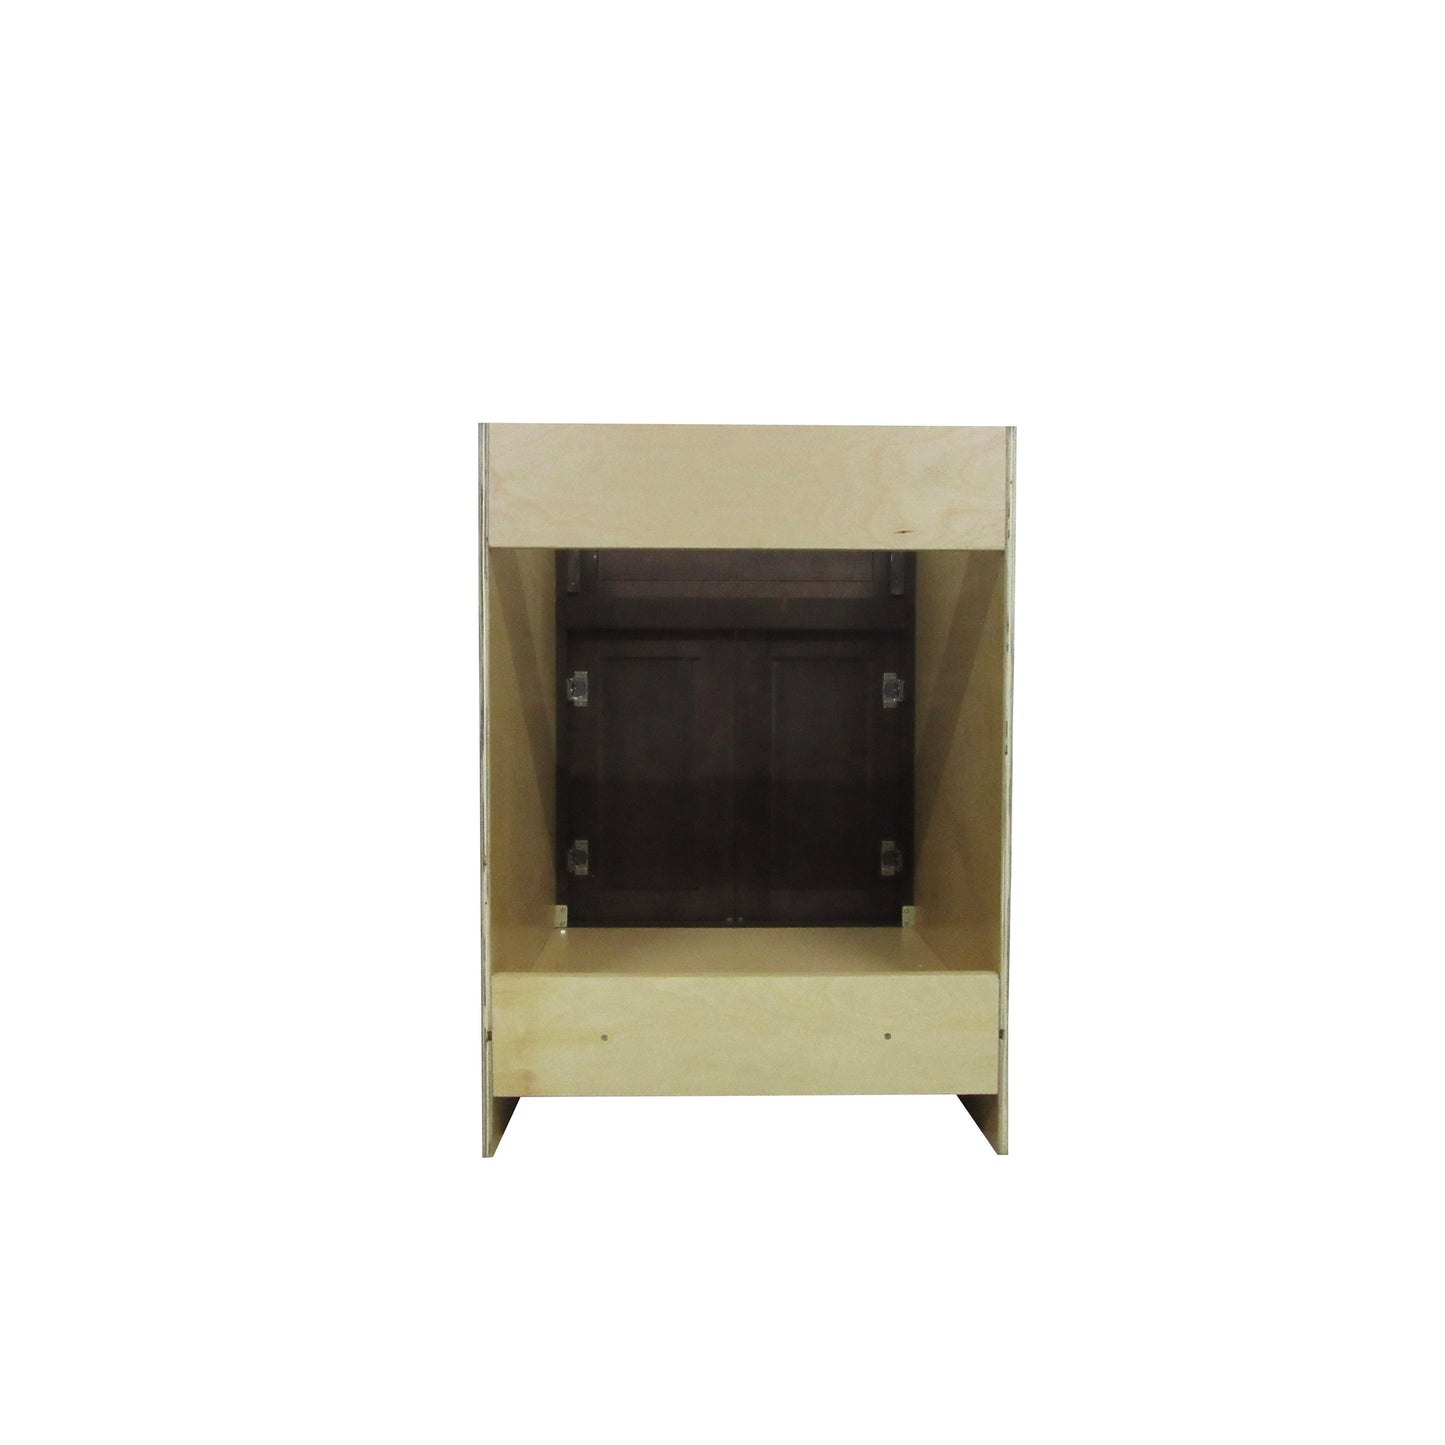 Vanity Art 24" Brown Freestanding Solid Wood Vanity Cabinet With Double Soft Closing Doors